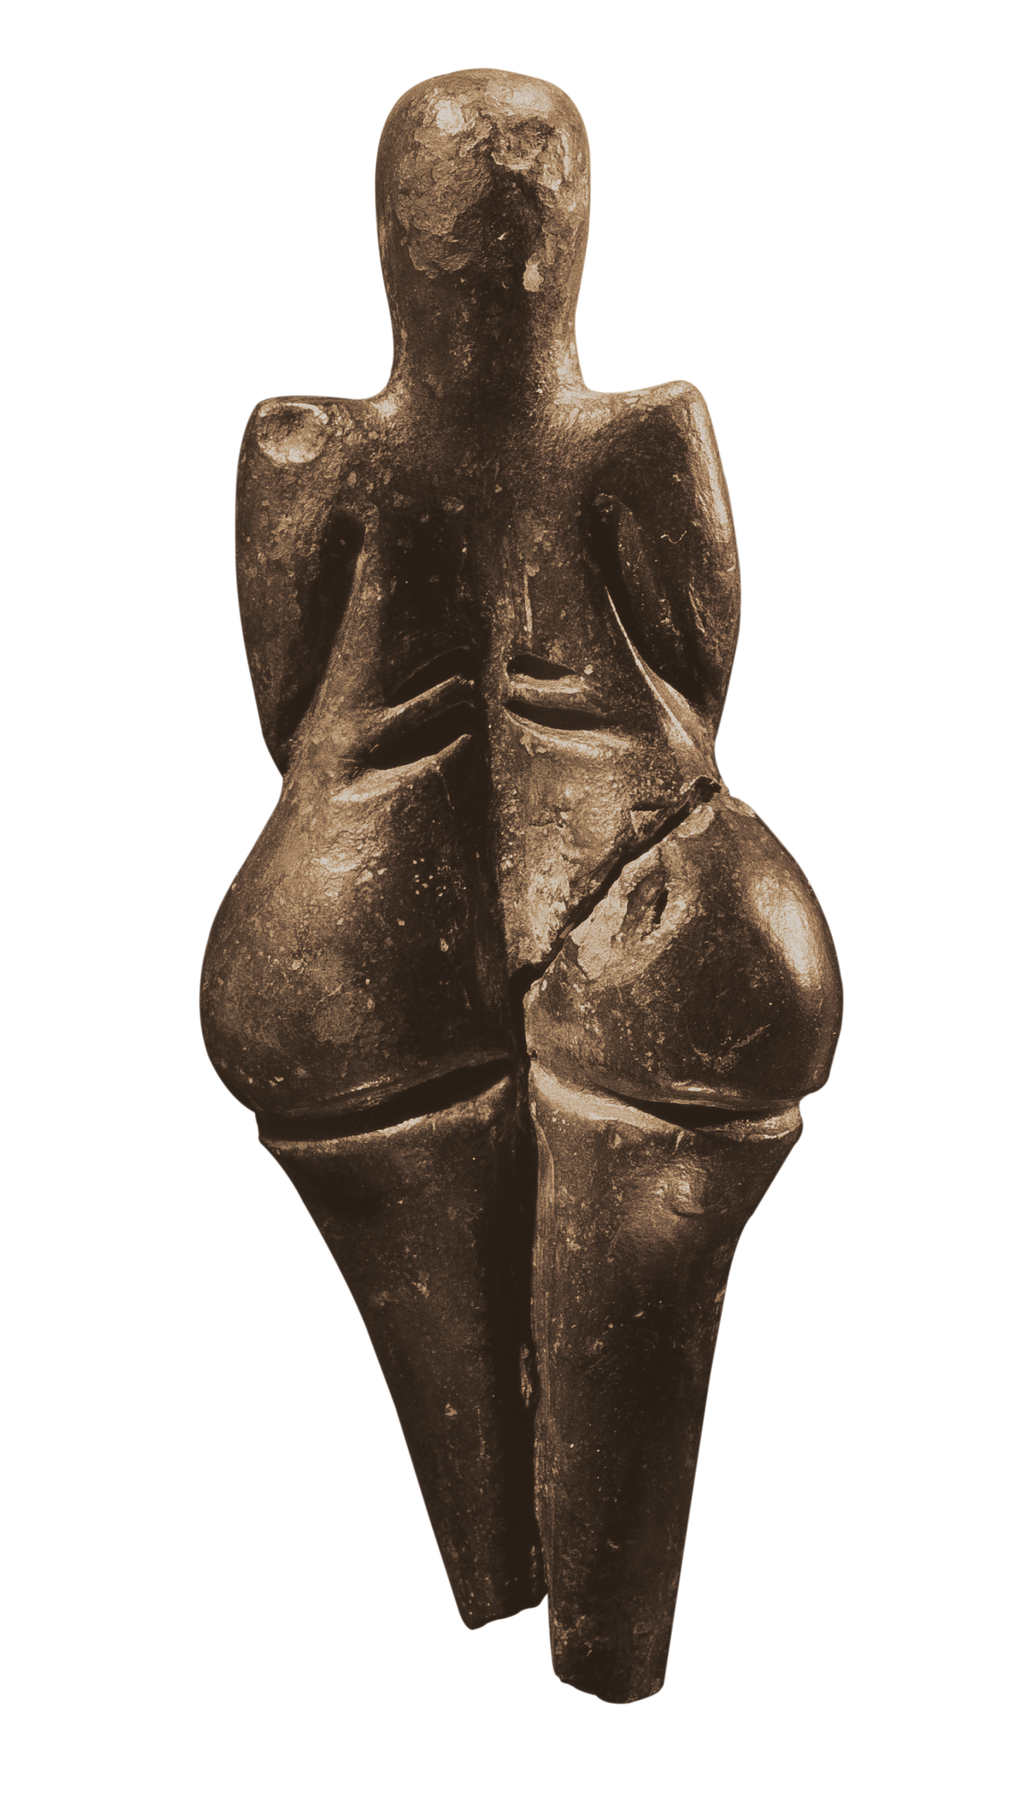 Fotografia. Três ângulos (frontal, lateral e posterior) de escultura em argila escura de mulher nua, de formas arredondadas e volumosas, seios grandes e flácidos, sem braços e pés e sem rosto definido.